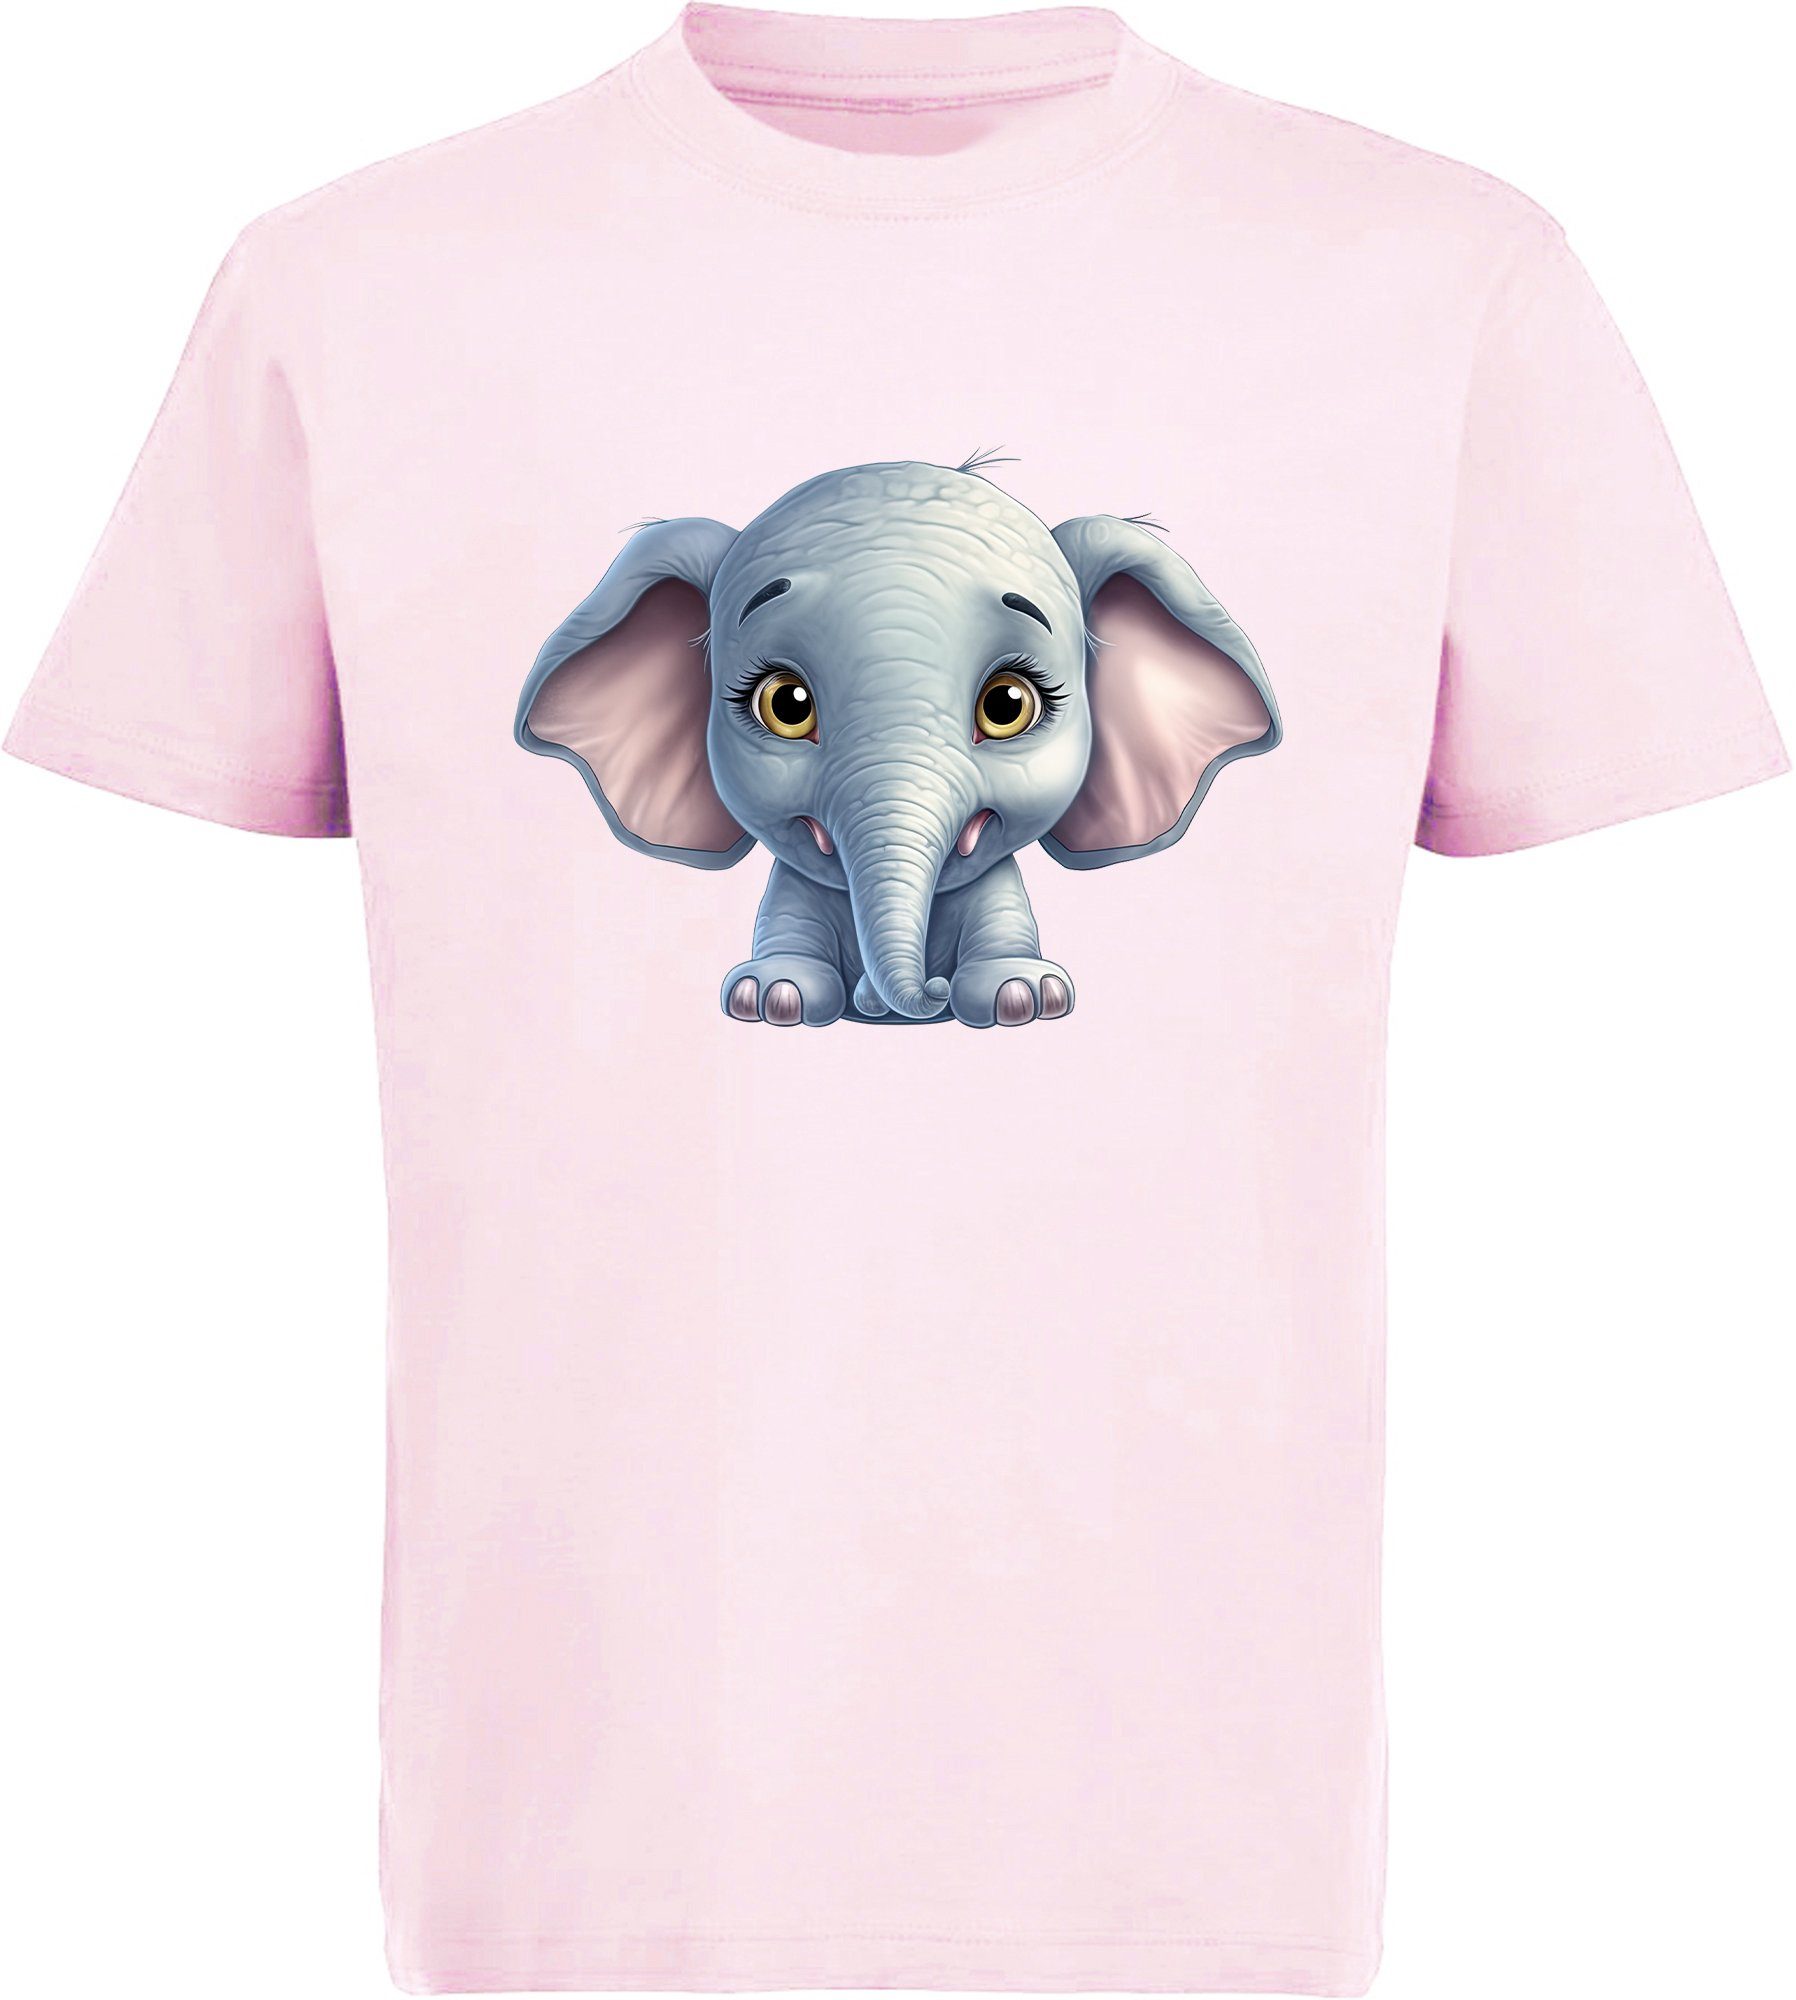 MyDesign24 T-Shirt Kinder Wildtier Print Shirt bedruckt - Baby Elefant Baumwollshirt mit Aufdruck, i272 rosa